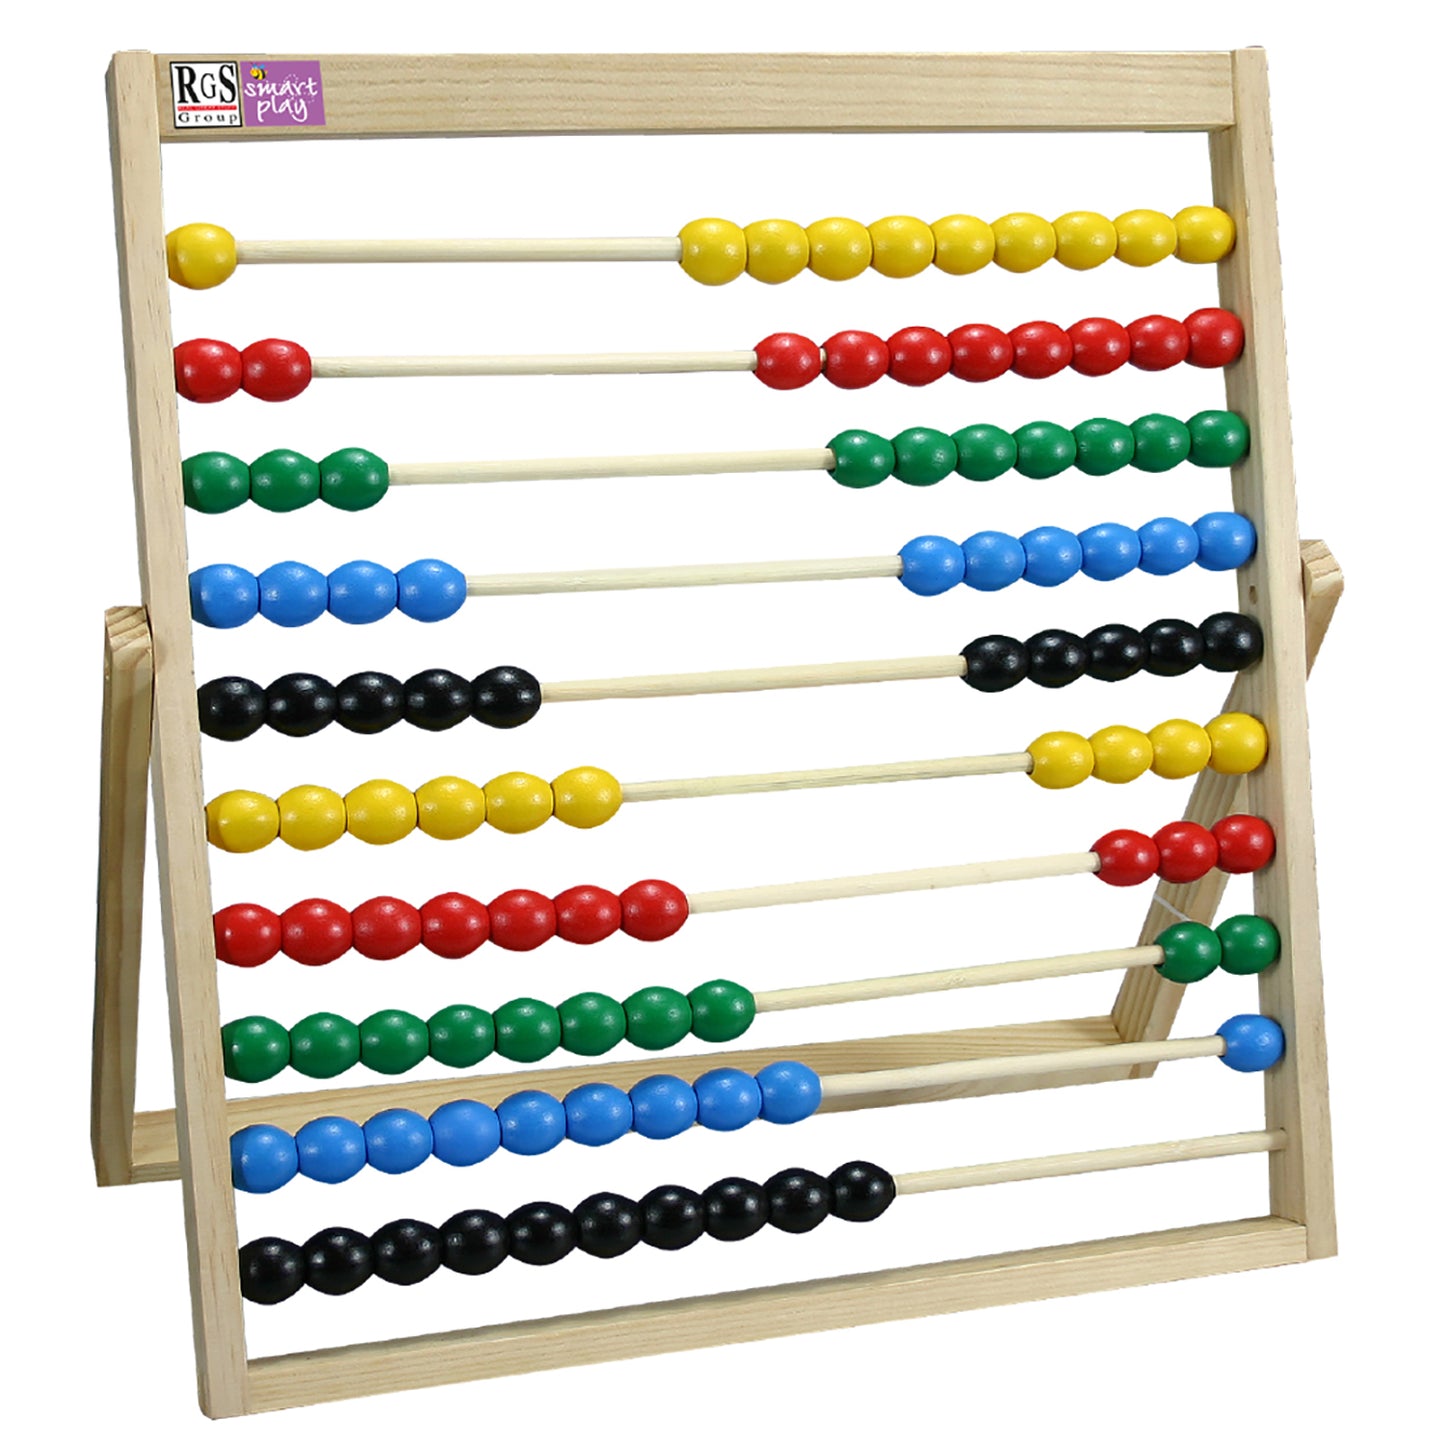 Teacher's Abacus